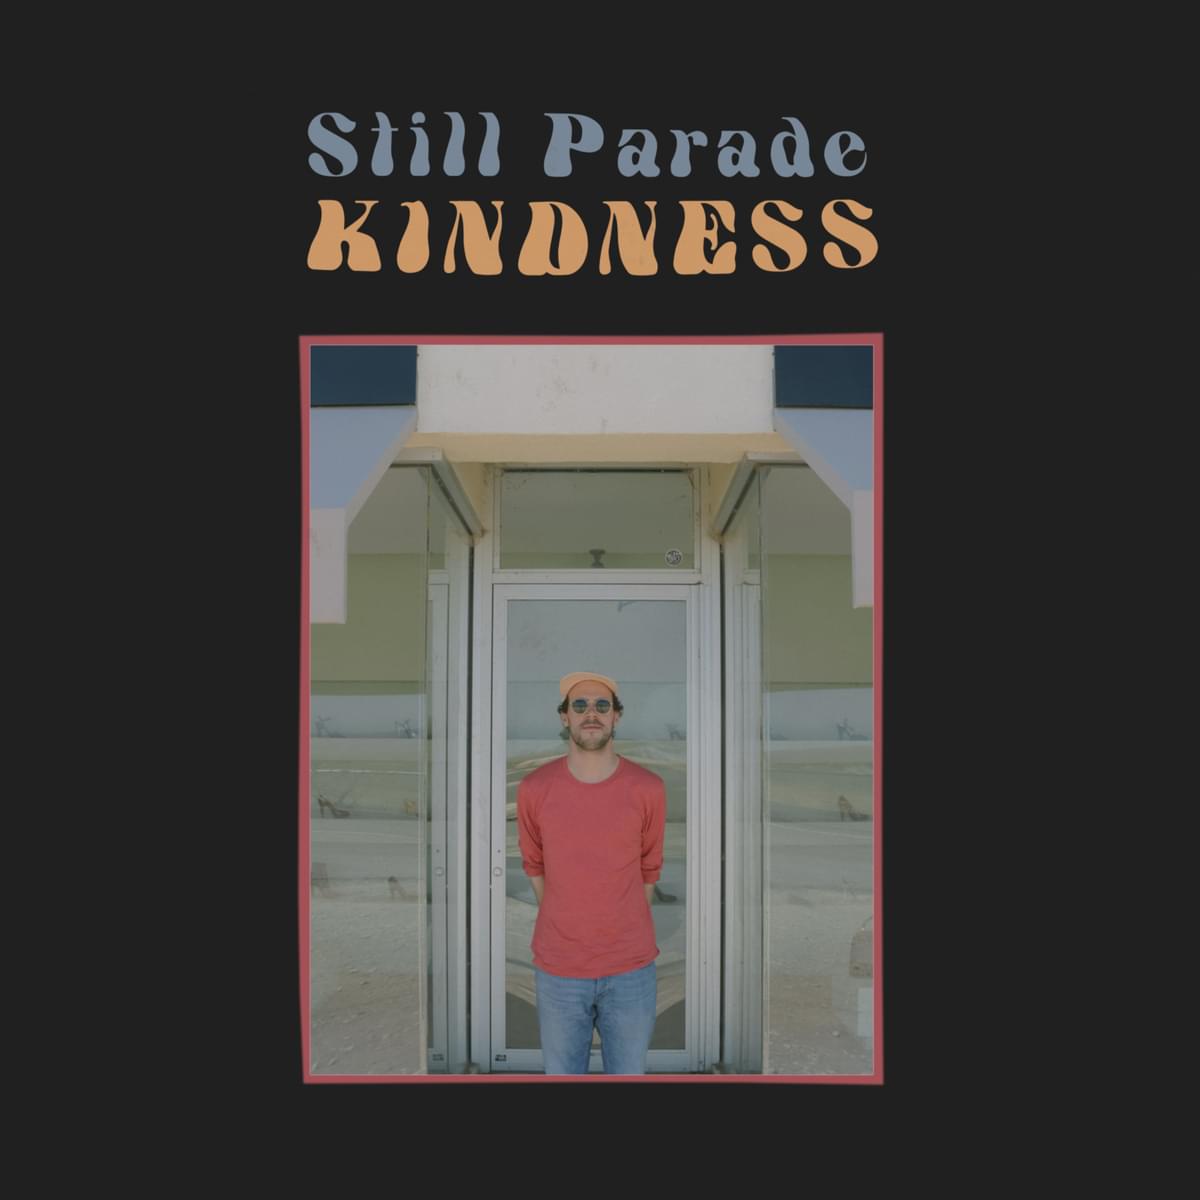 Still parade kindness Artwork